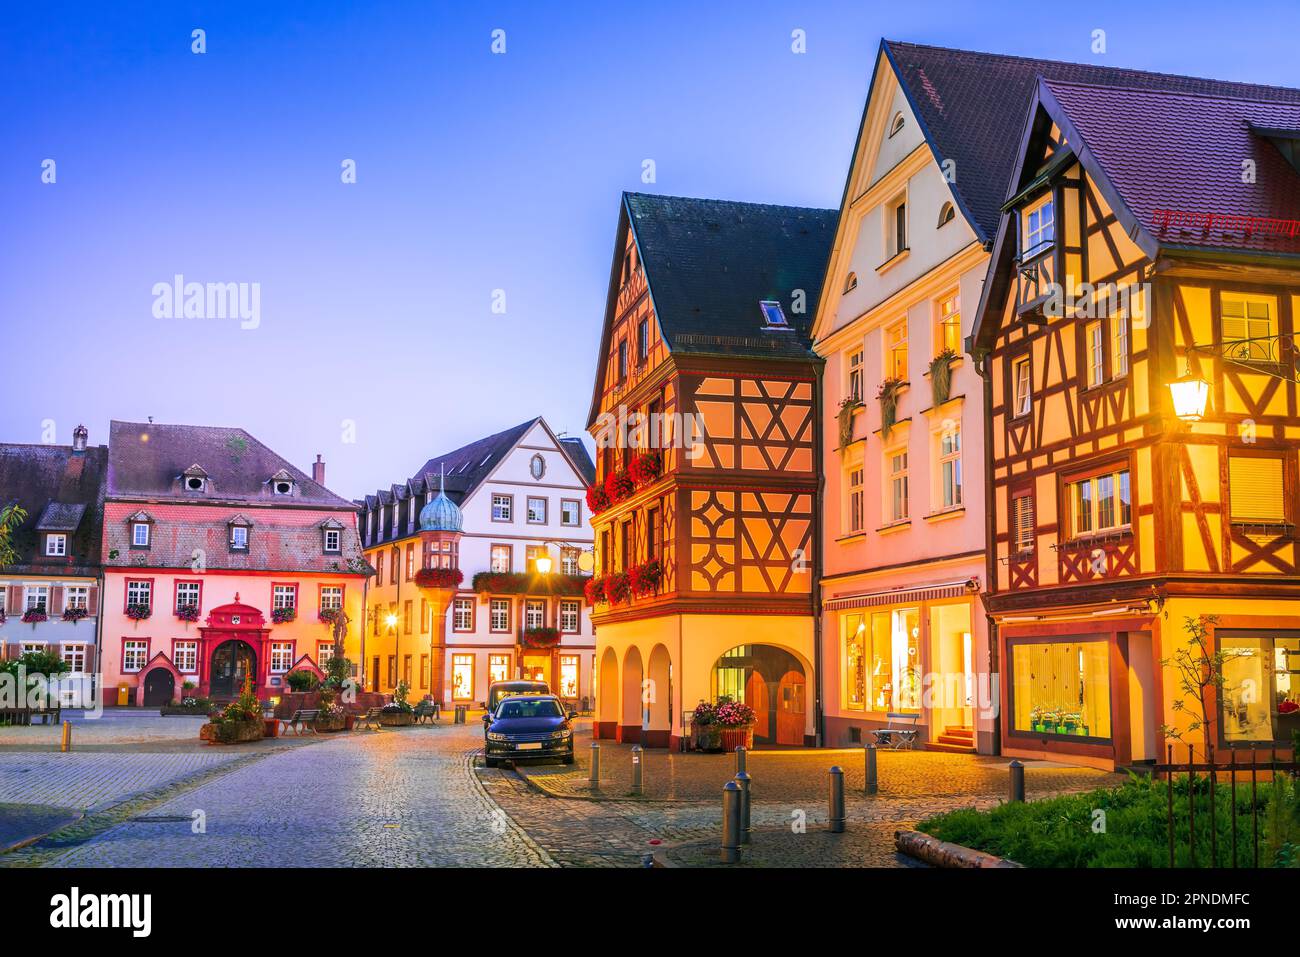 Gengenbach, Deutschland. Altstadt, blau beleuchtet, magische Kulisse für die malerischen Gebäude der Stadt. Schwarzwald-Reise-Hintergrund. Stockfoto